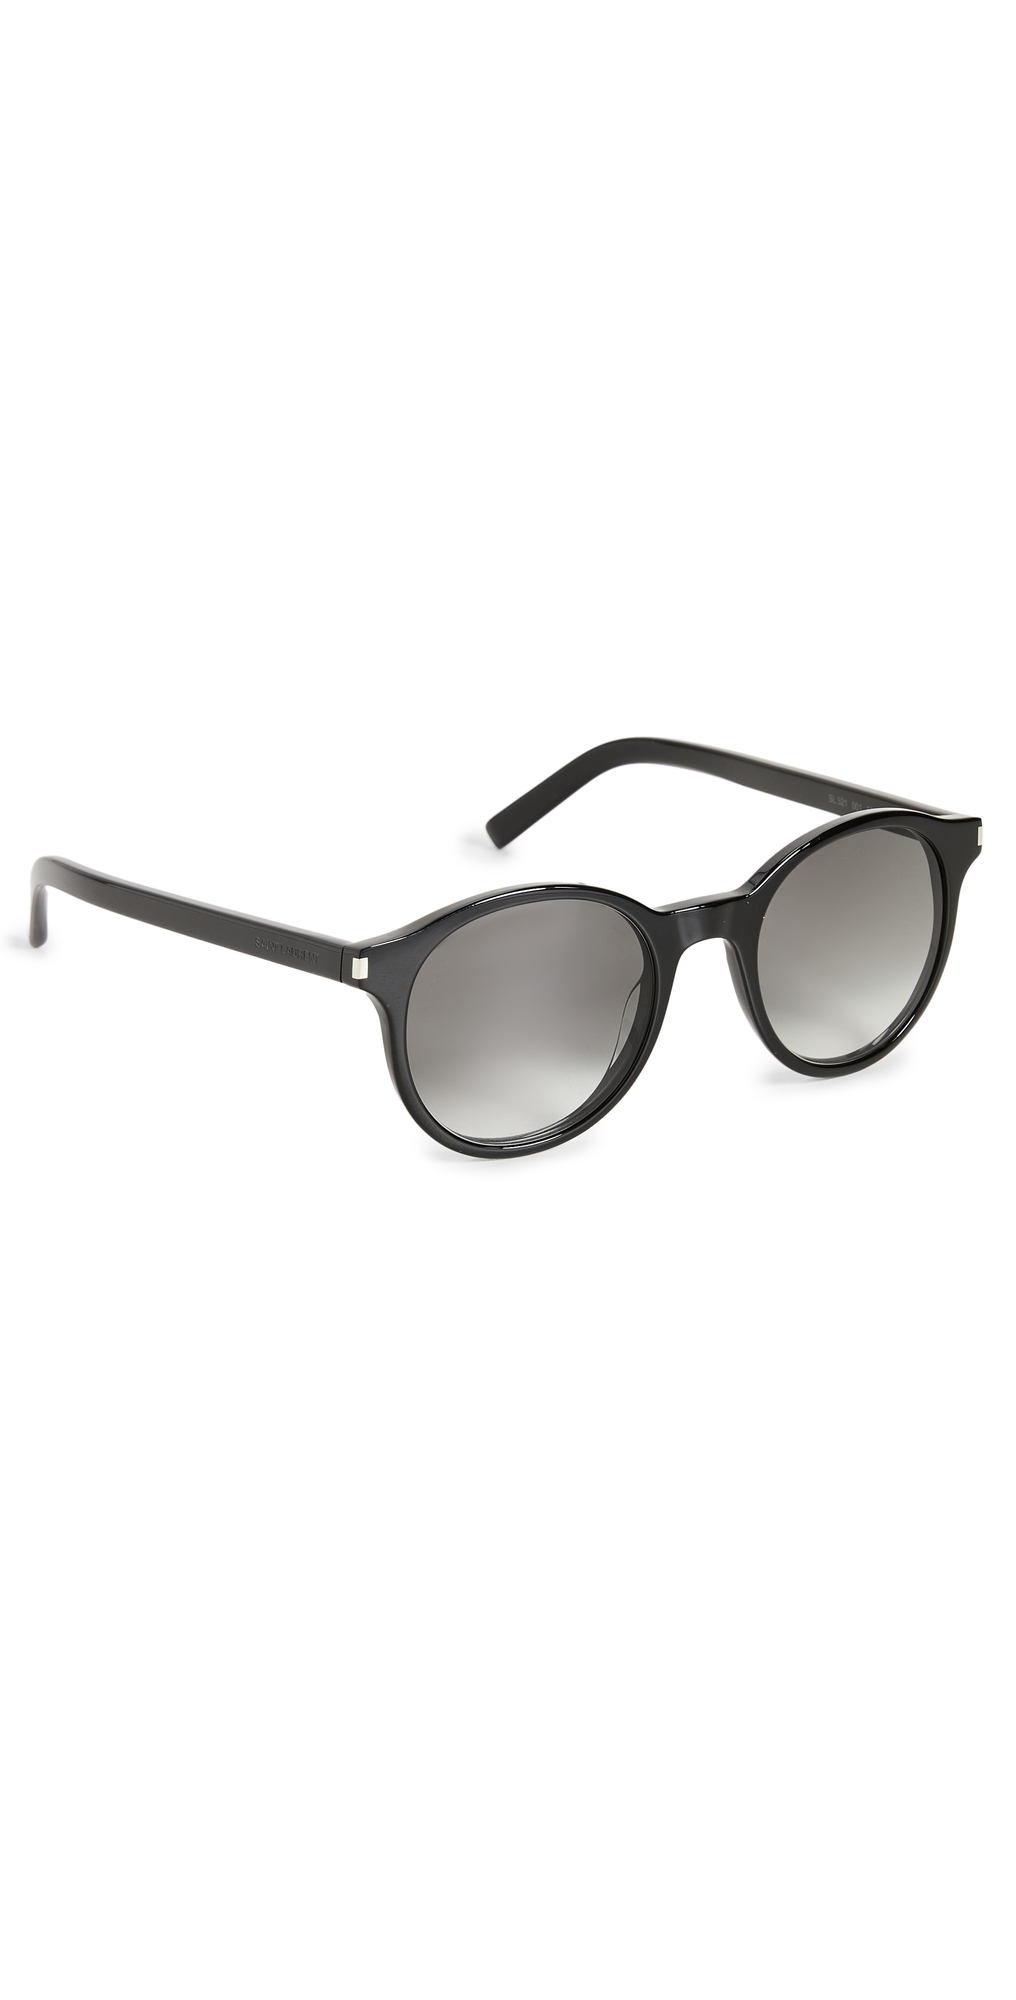 Saint Laurent SL 521 Sunglasses in black